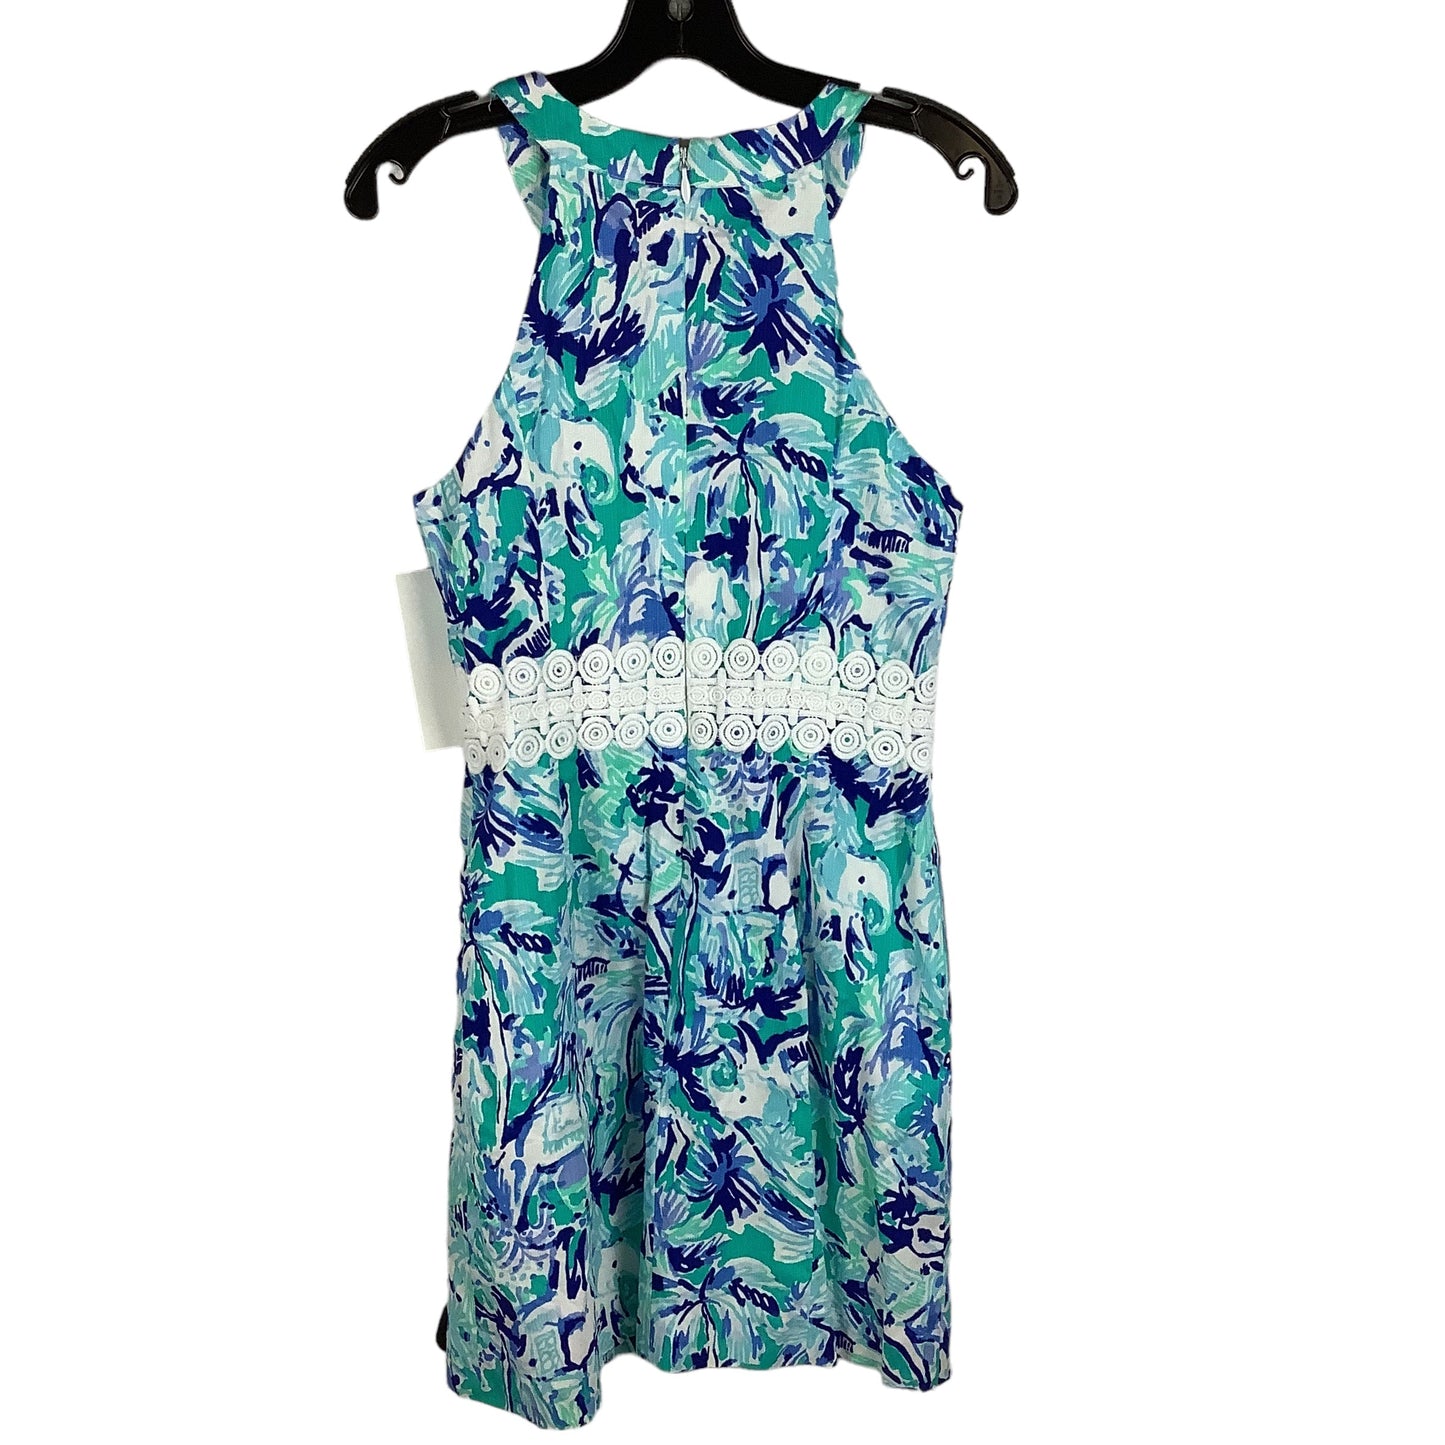 Aqua Dress Designer Lilly Pulitzer, Size 4